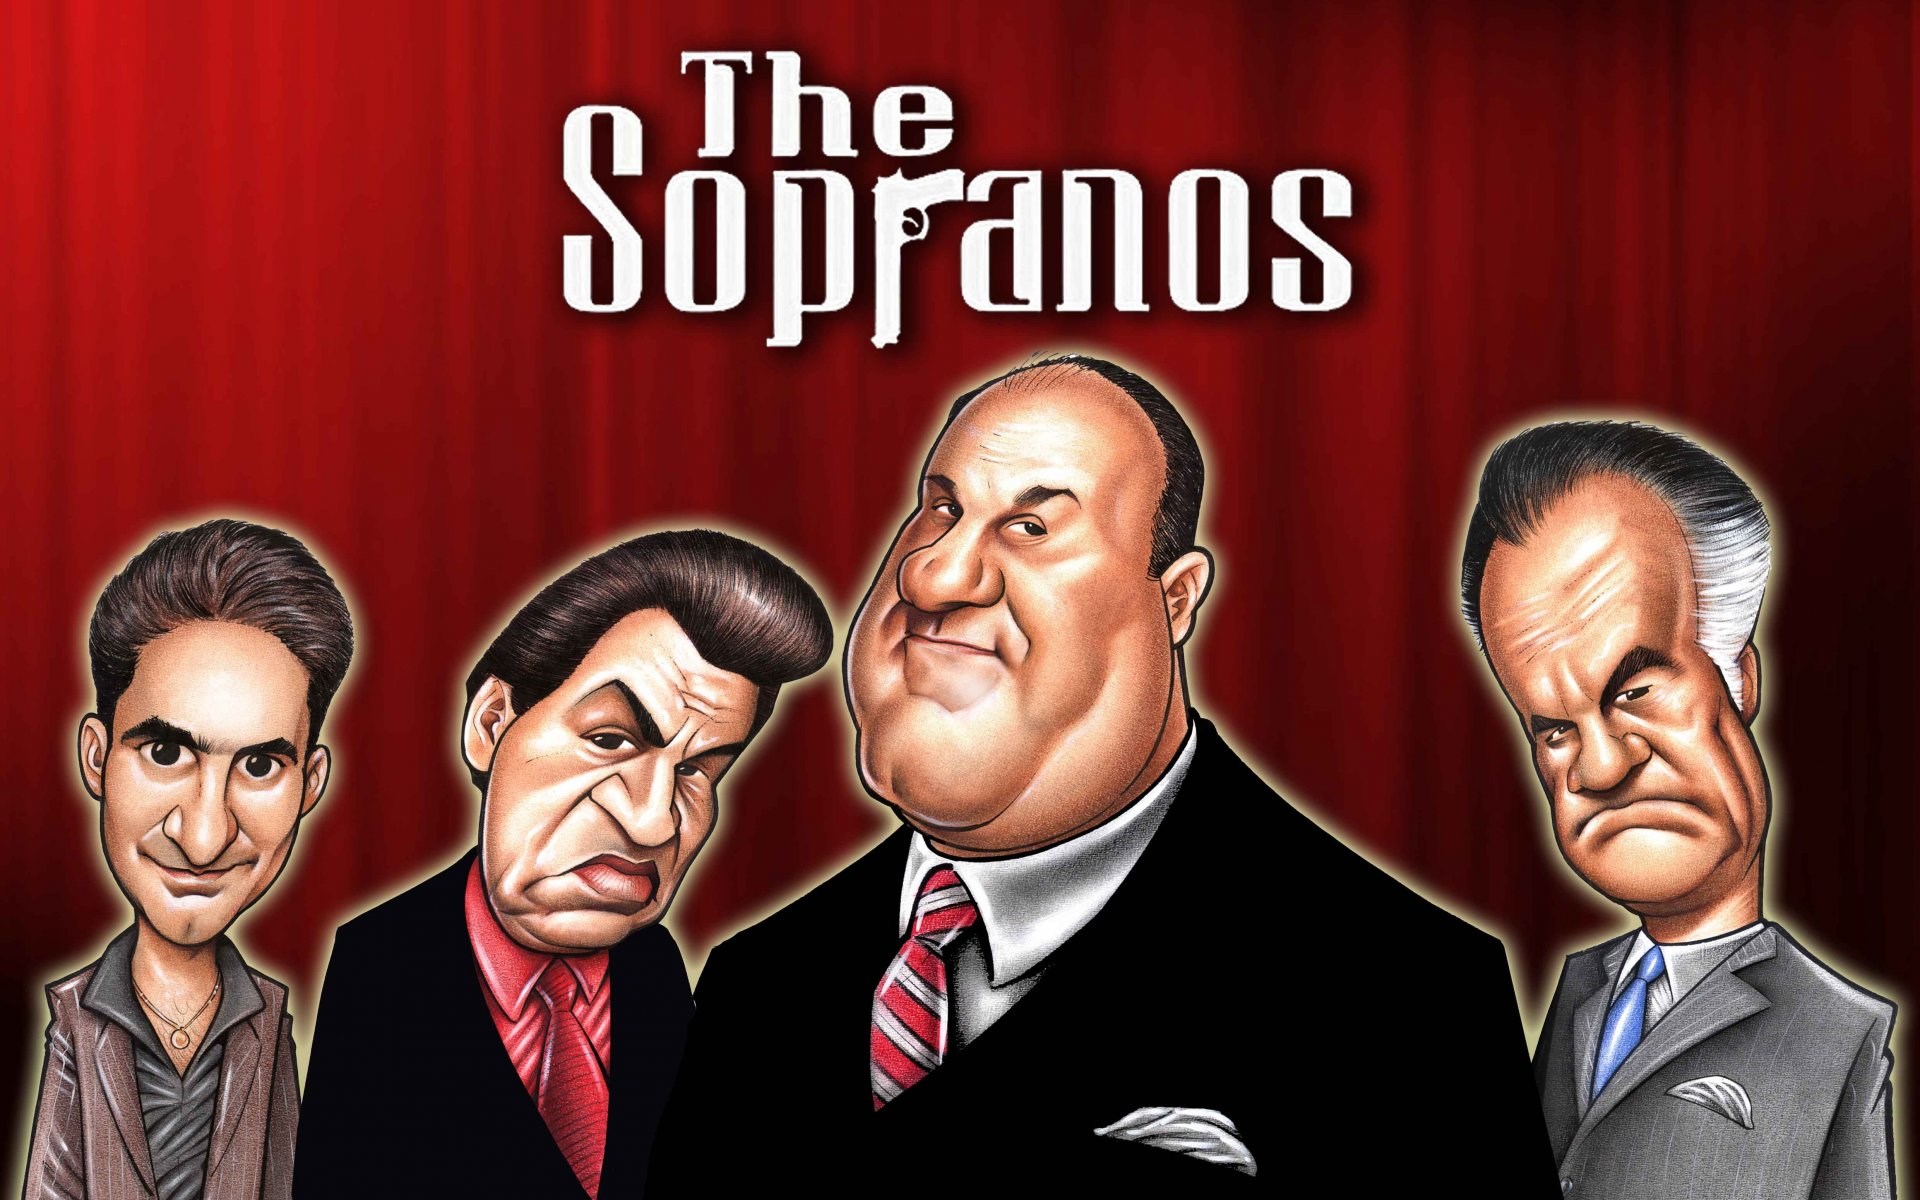 игровые автоматы, Клан Сопрано, The Sopranos, обзор видеослота, символы в и...